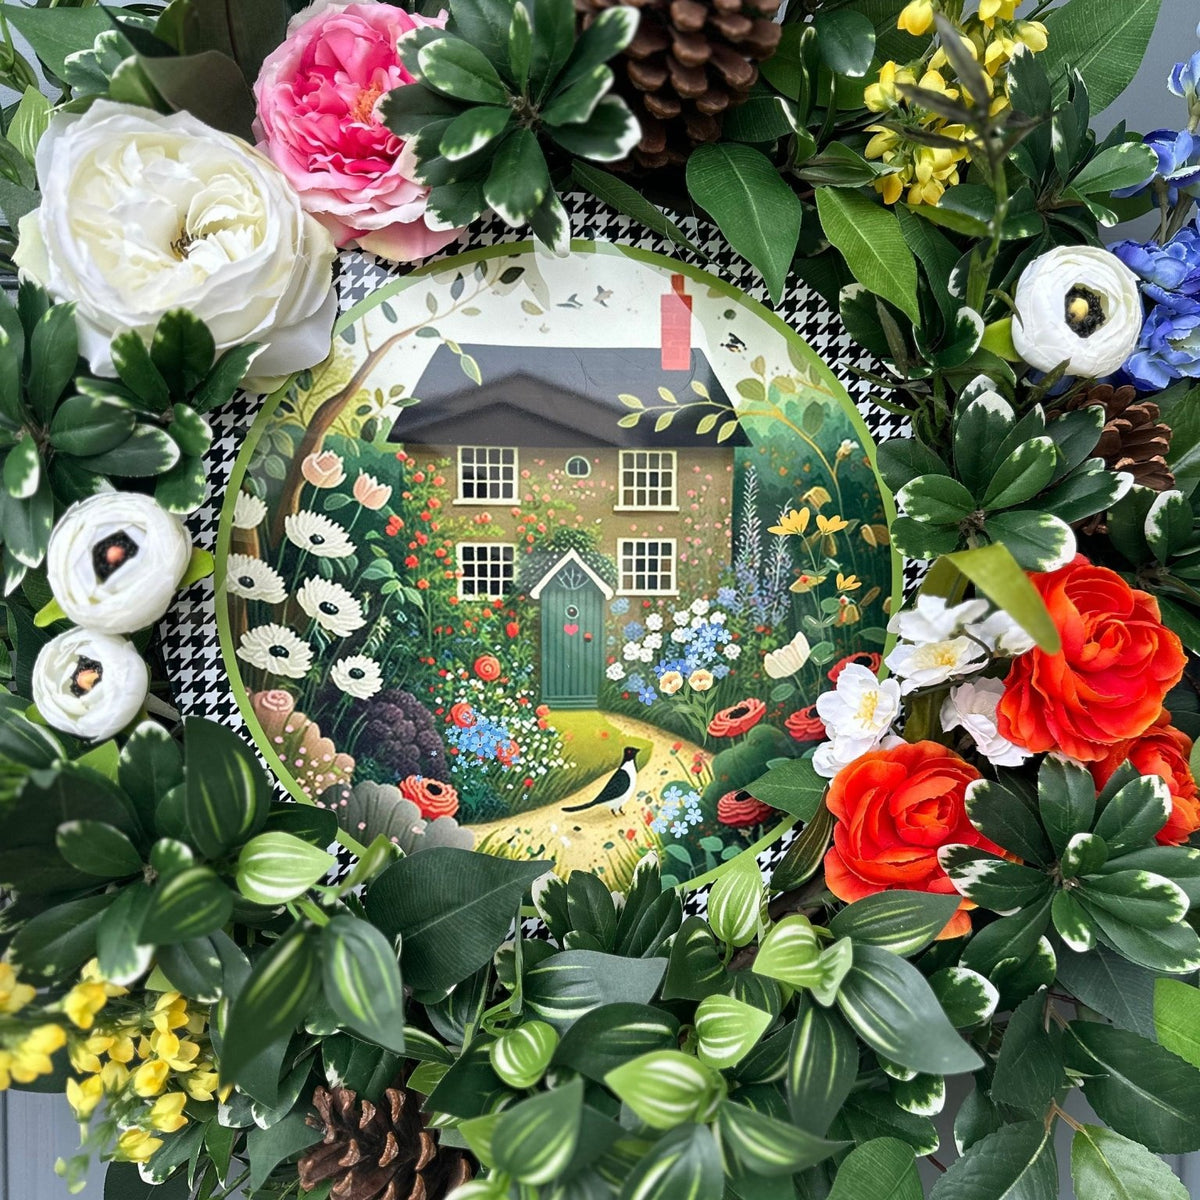 Wreath for front door